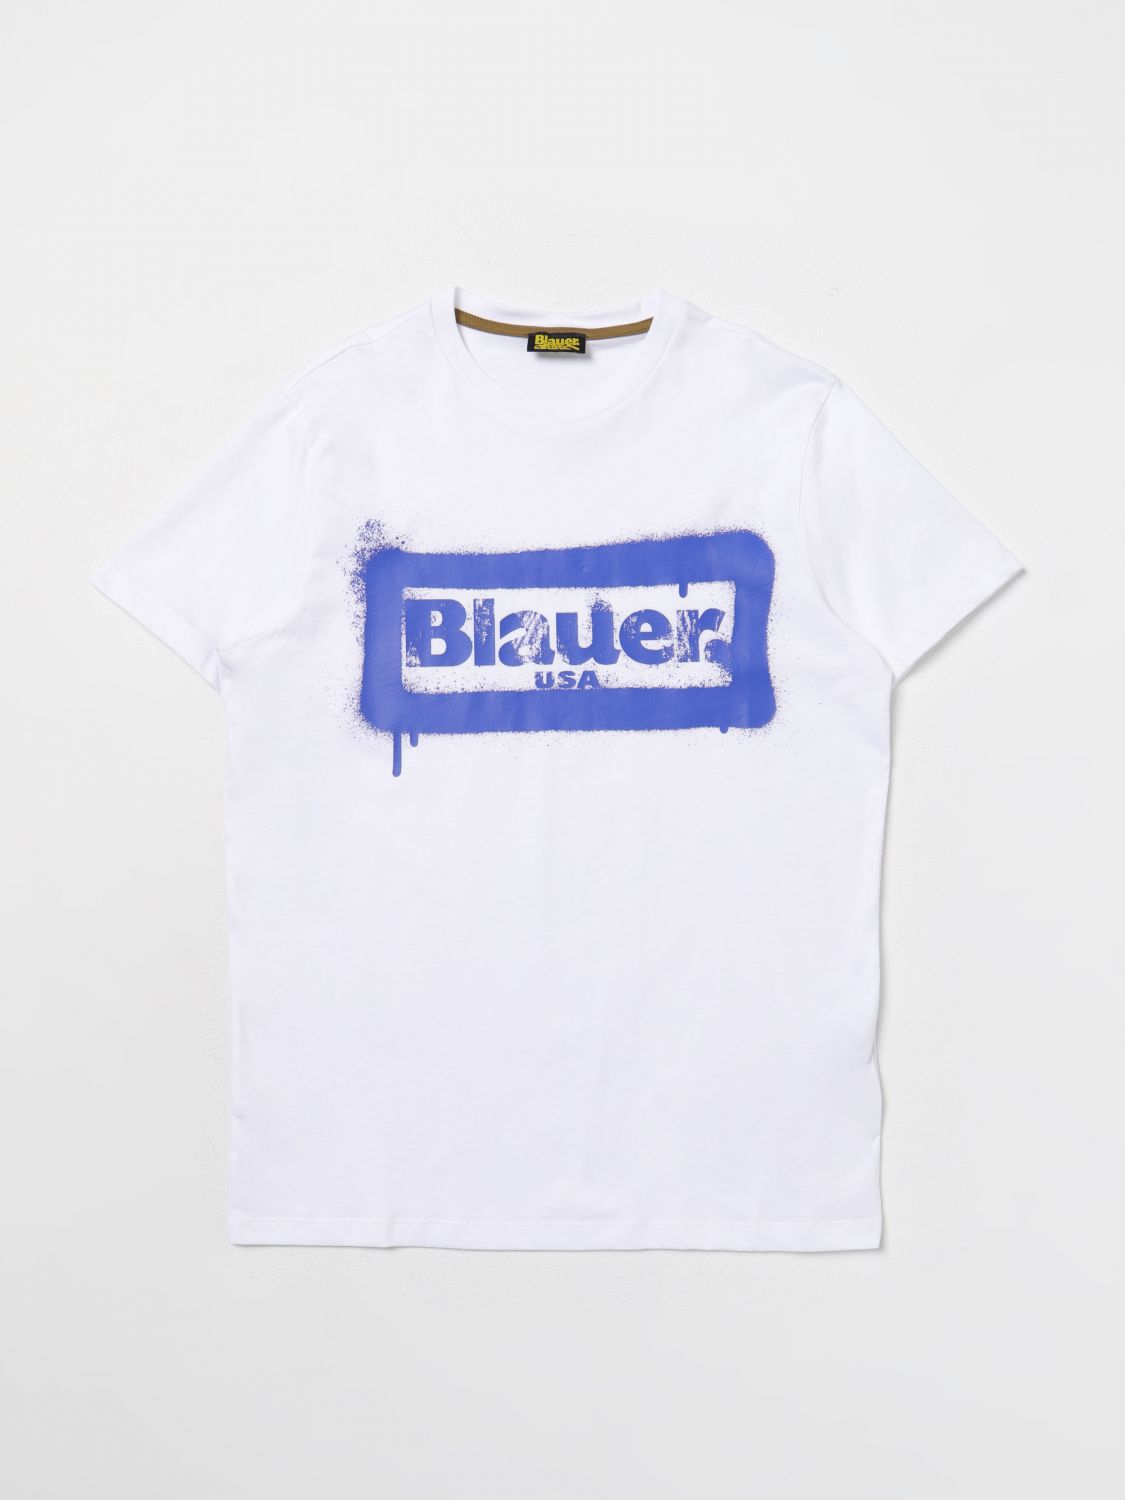 t-shirt blauer kids colour white